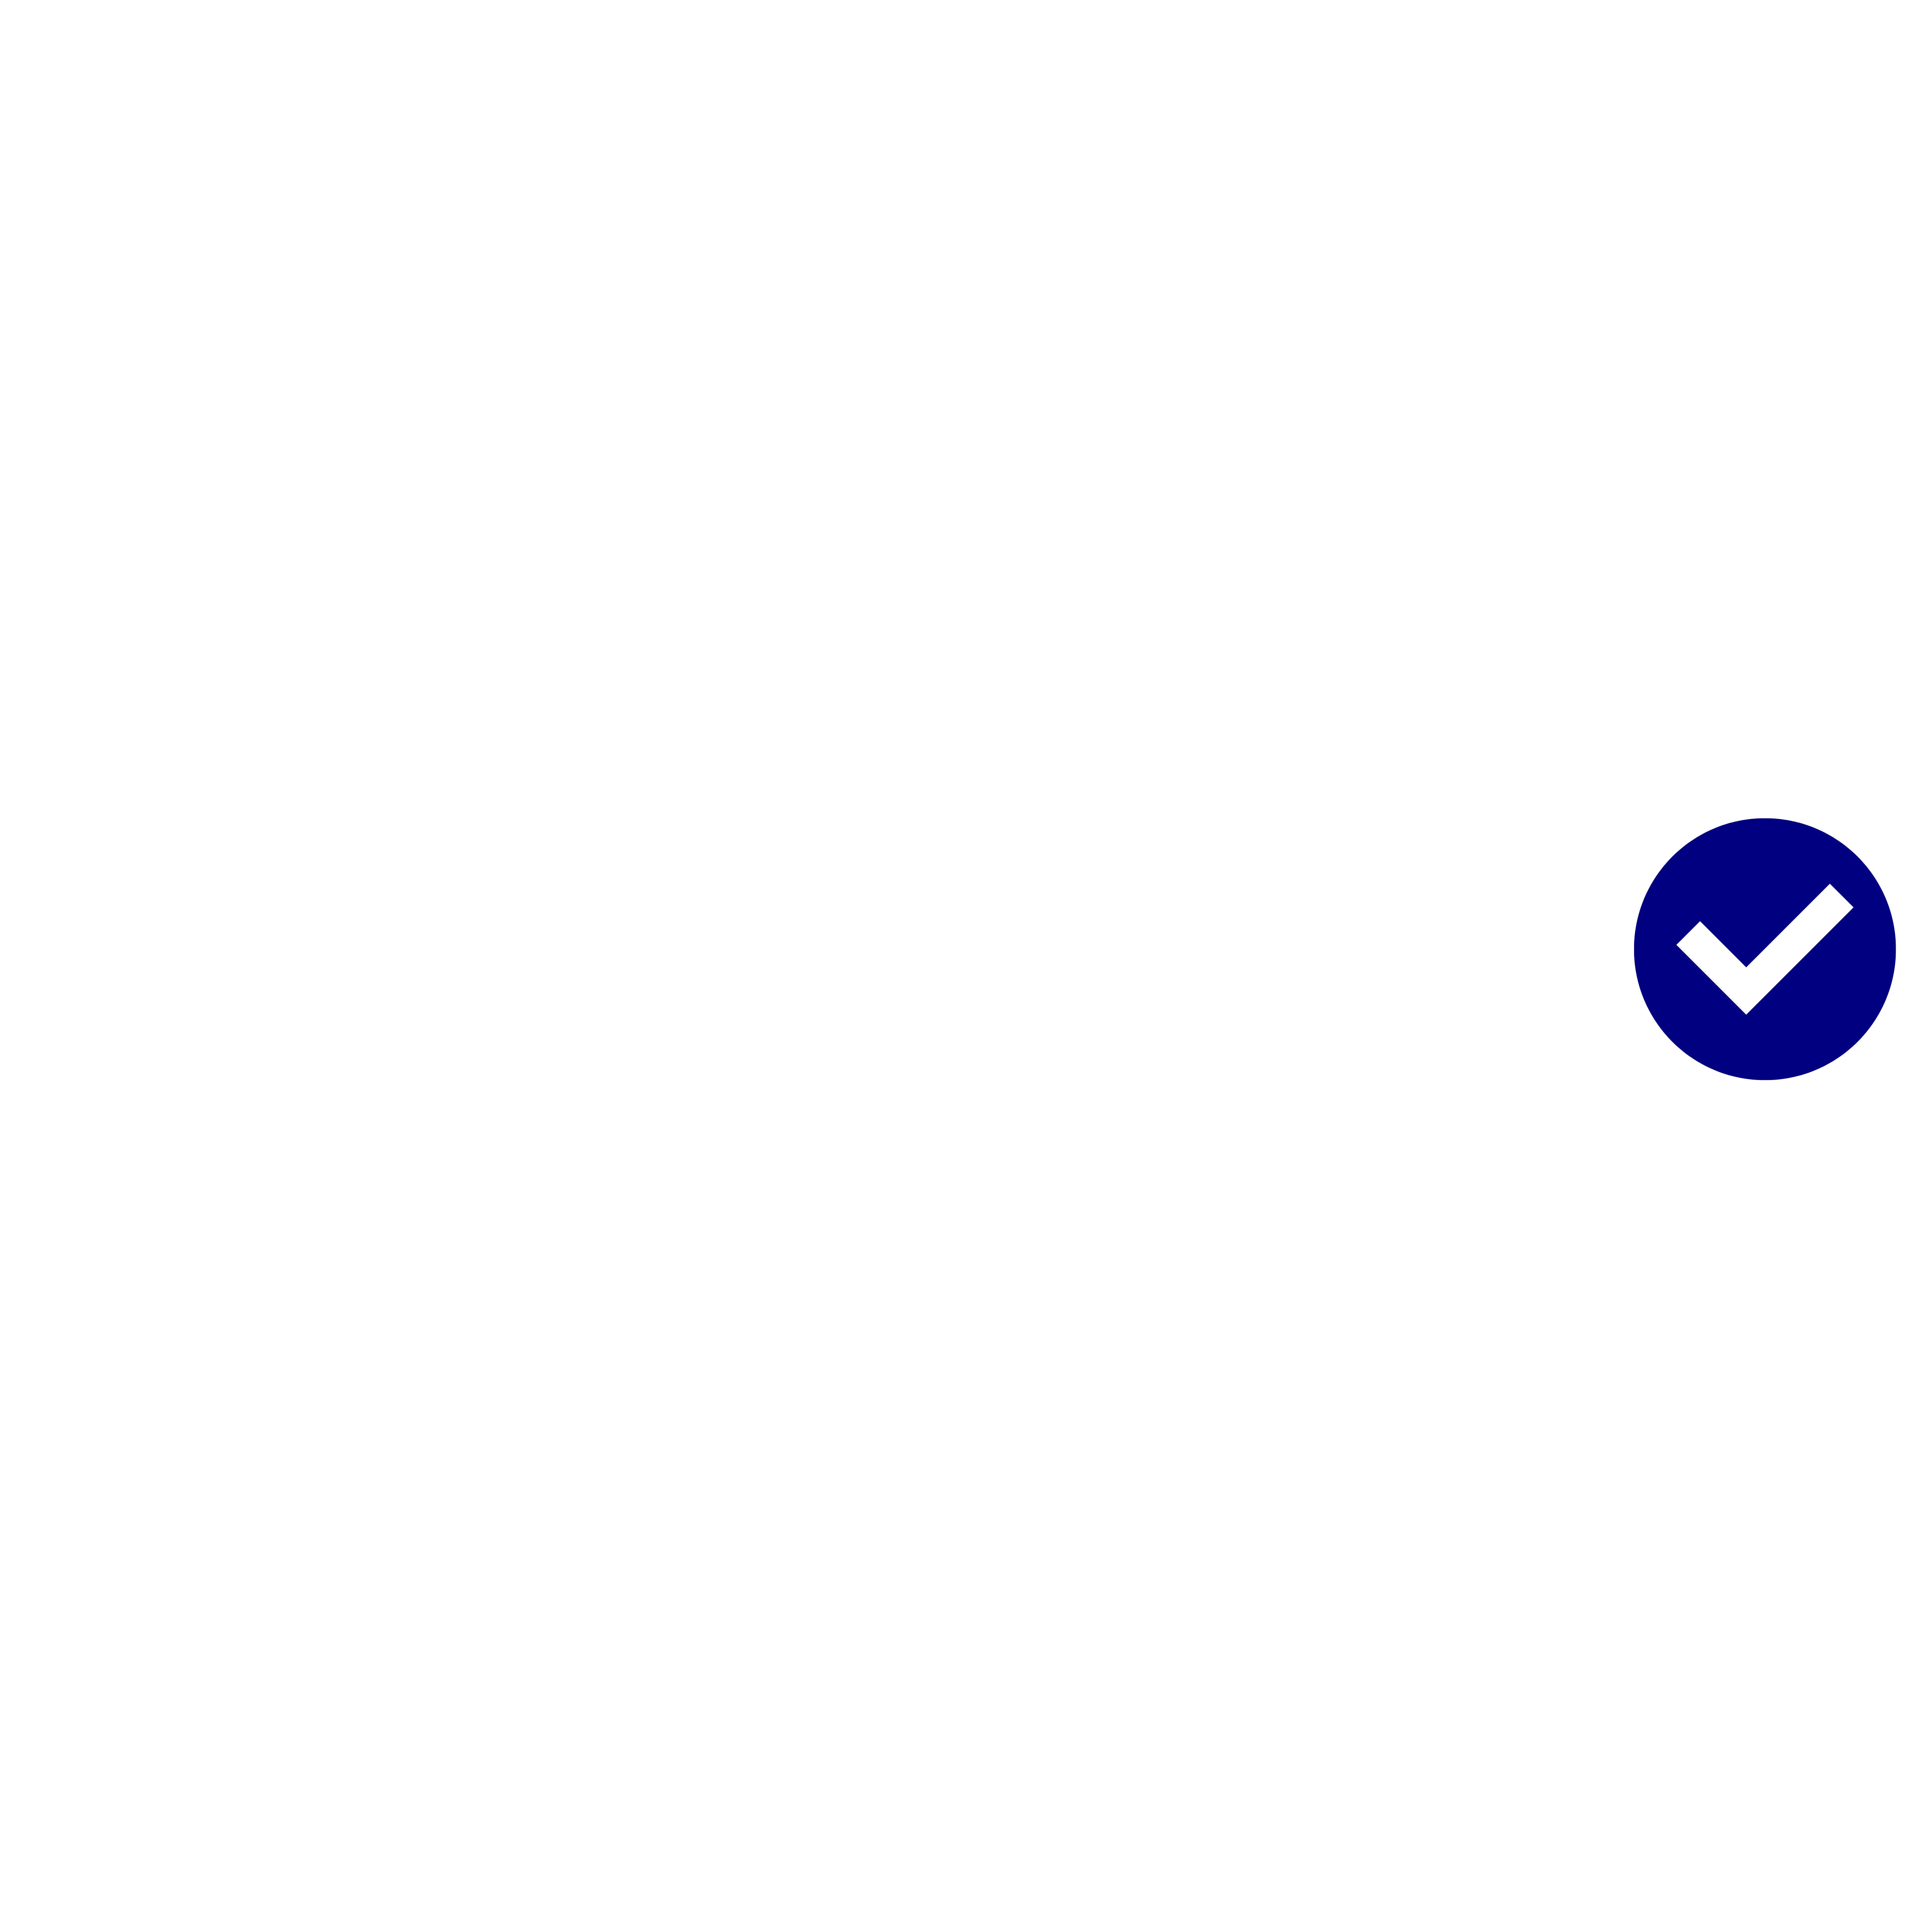 Buyer Hacks